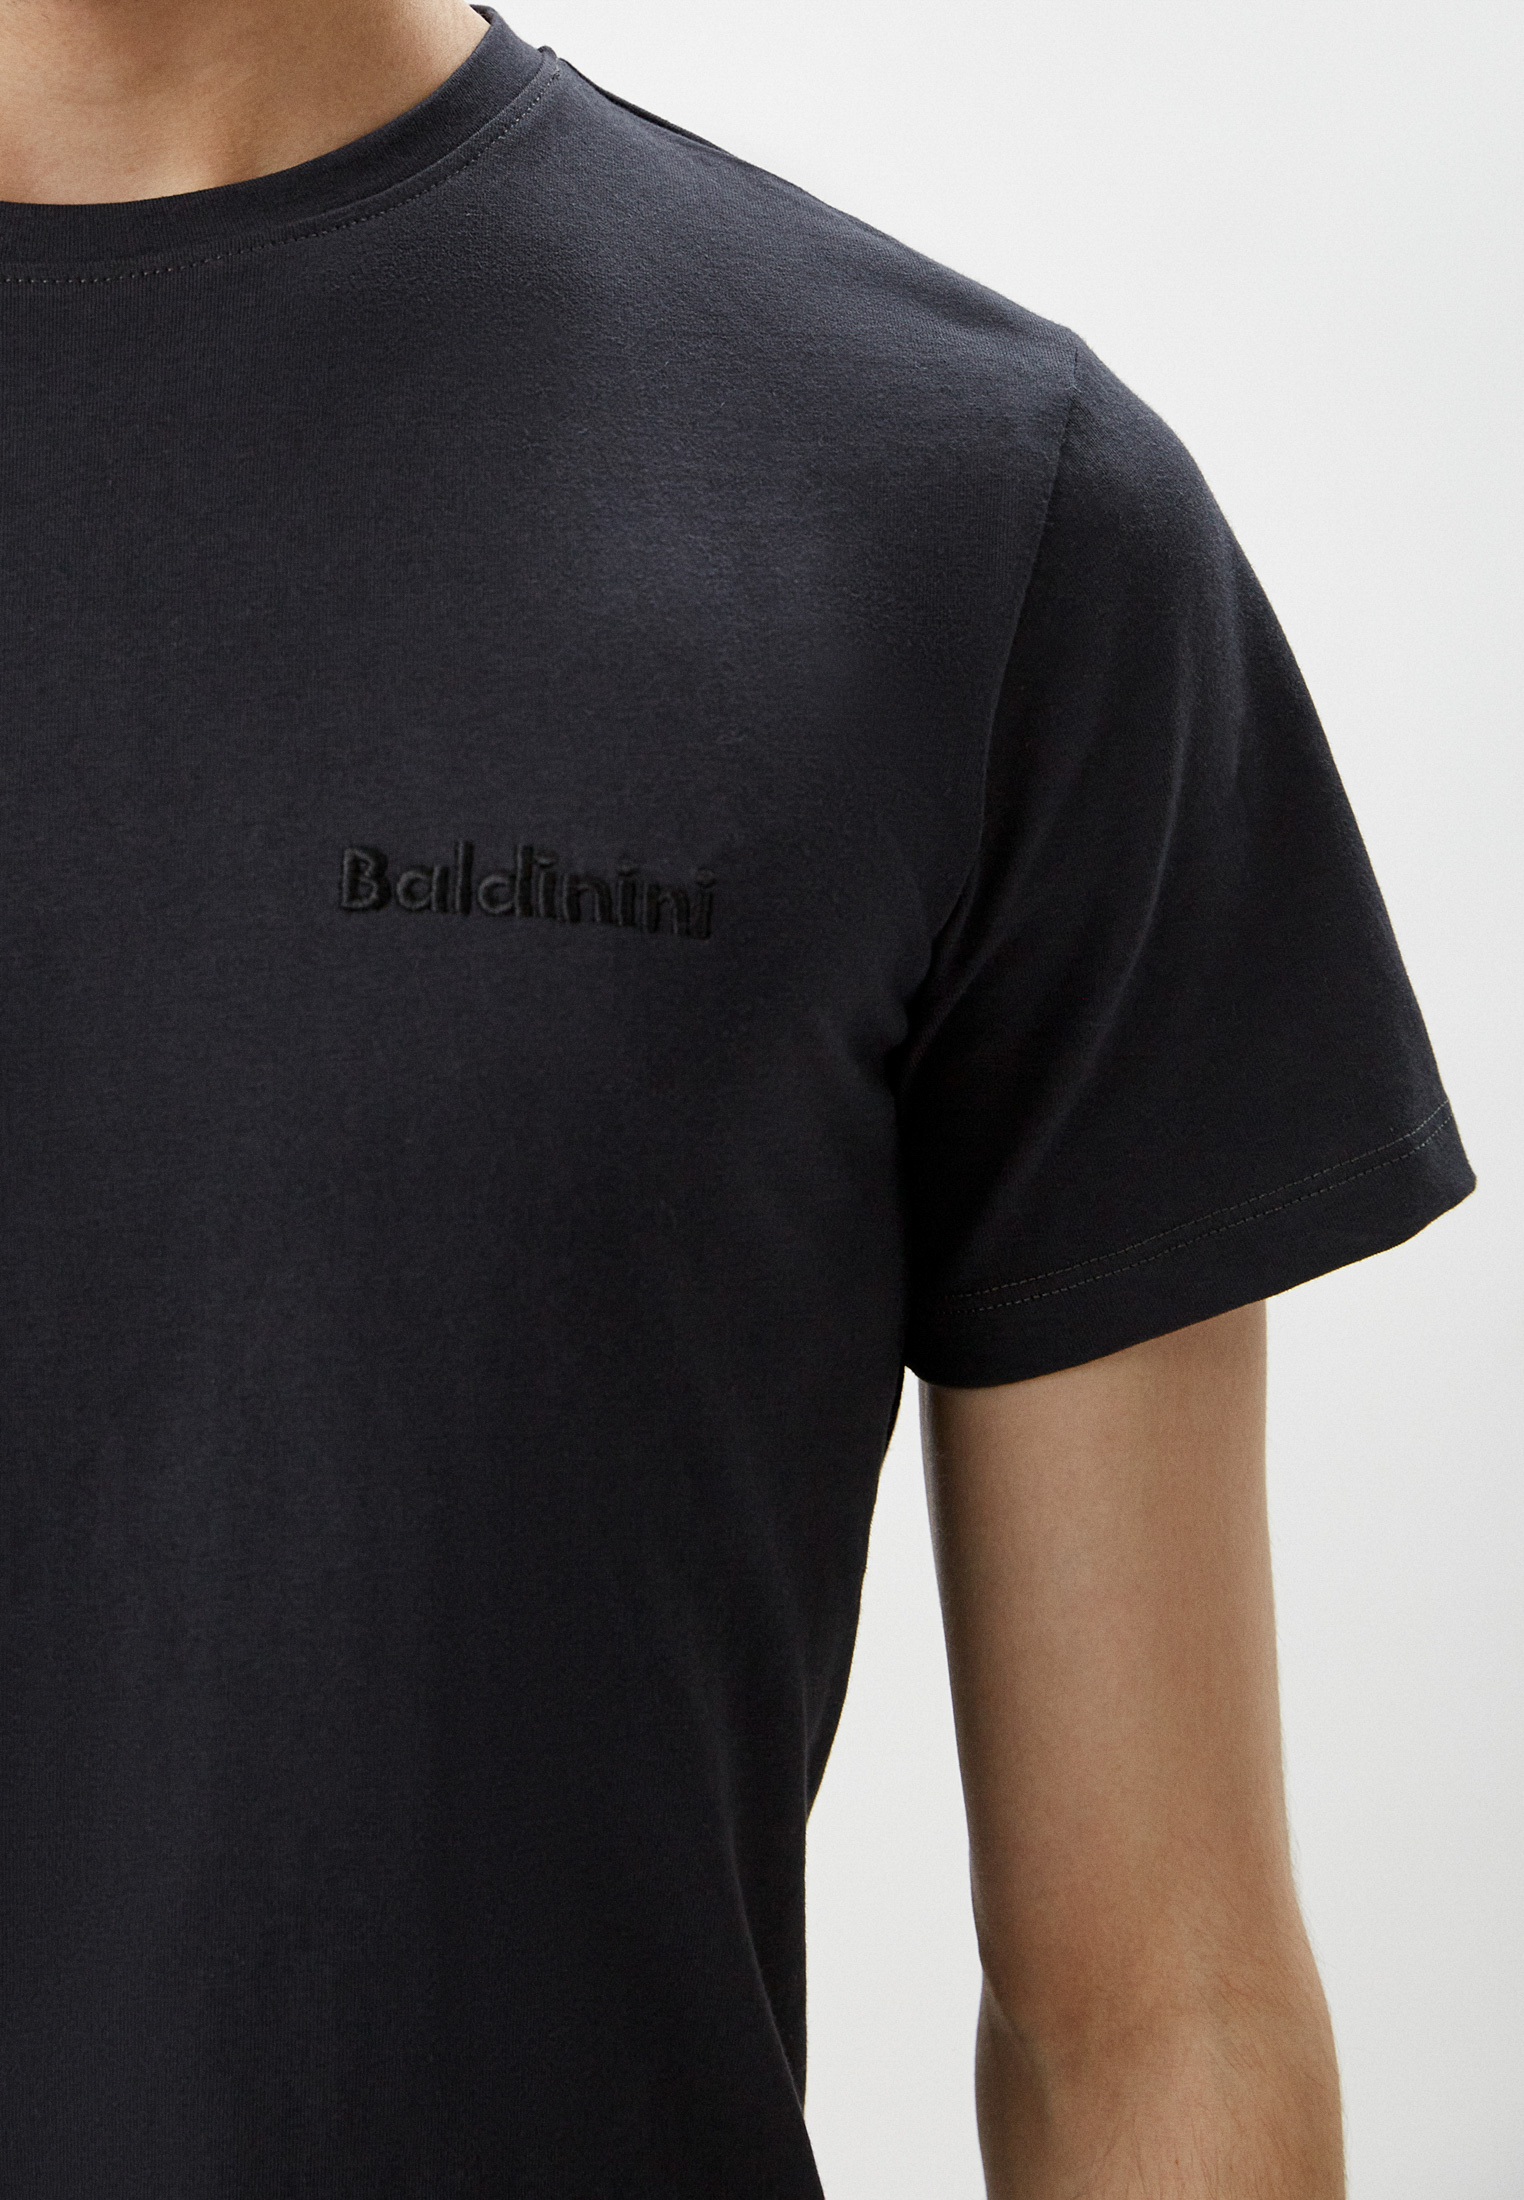 Мужская футболка Baldinini (Балдинини) M21: изображение 4